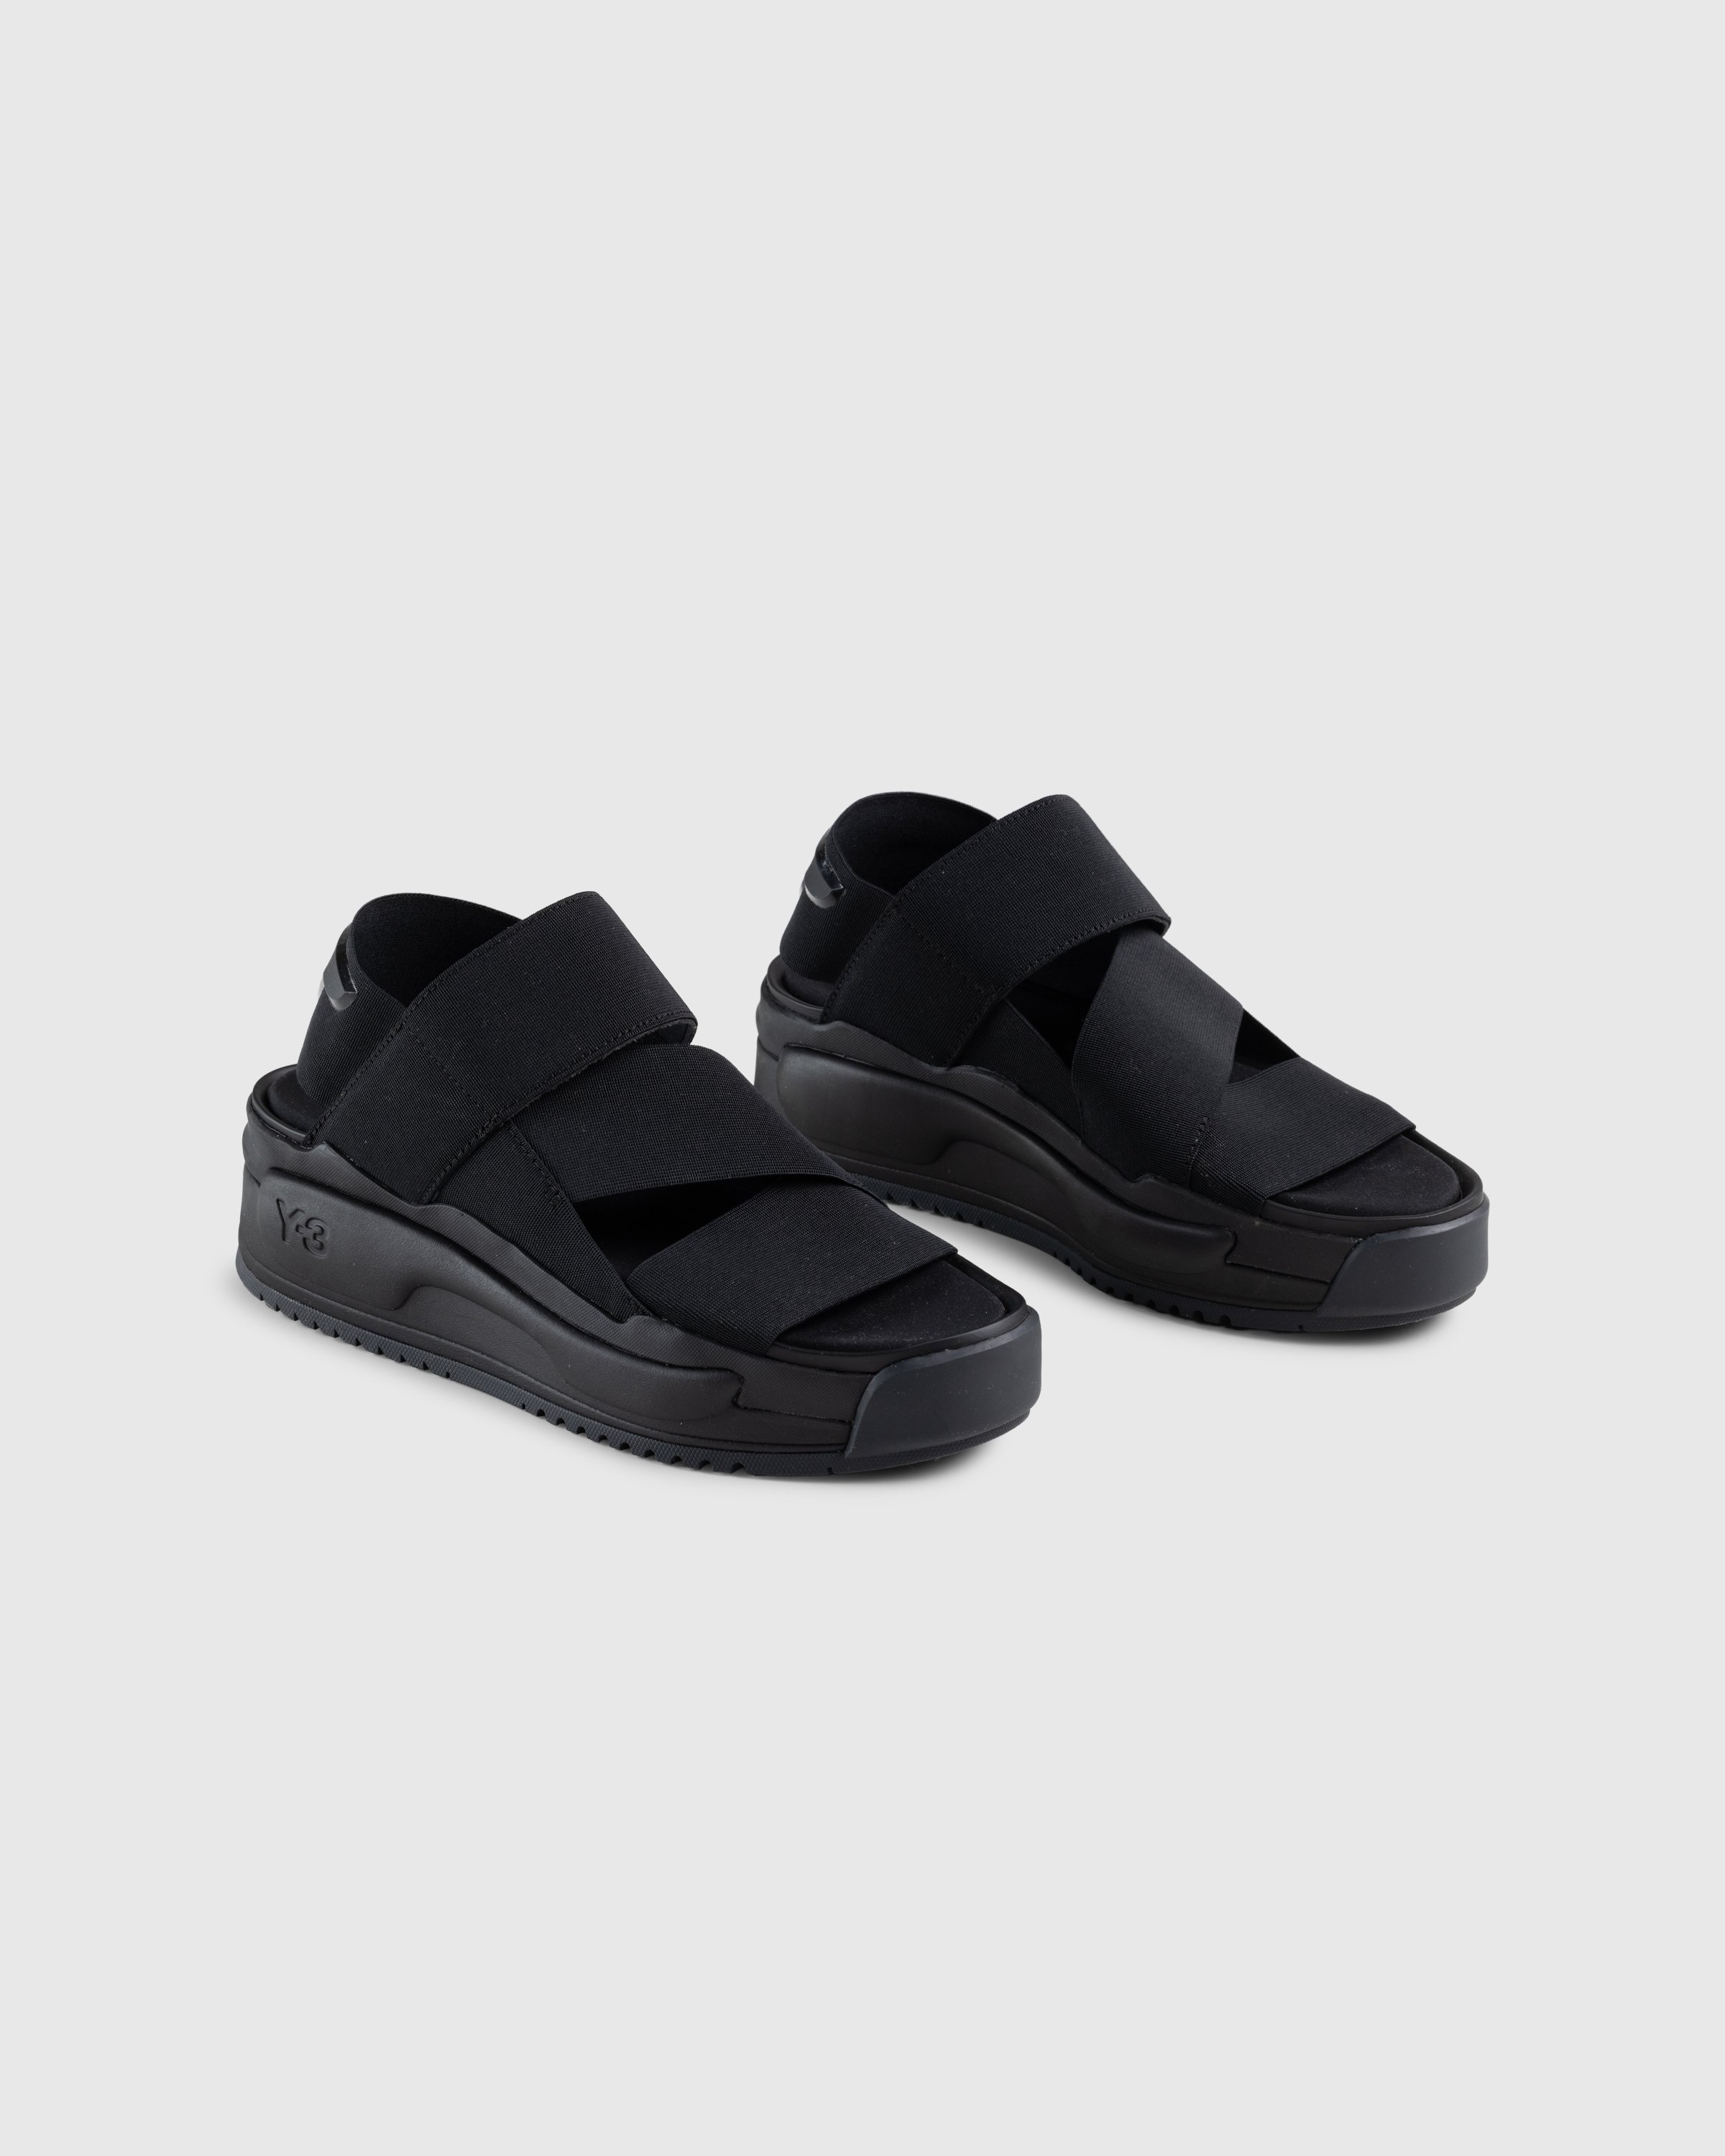 Y-3 - Y-3 Rivalry Sandal Black - Footwear - Black - Image 3